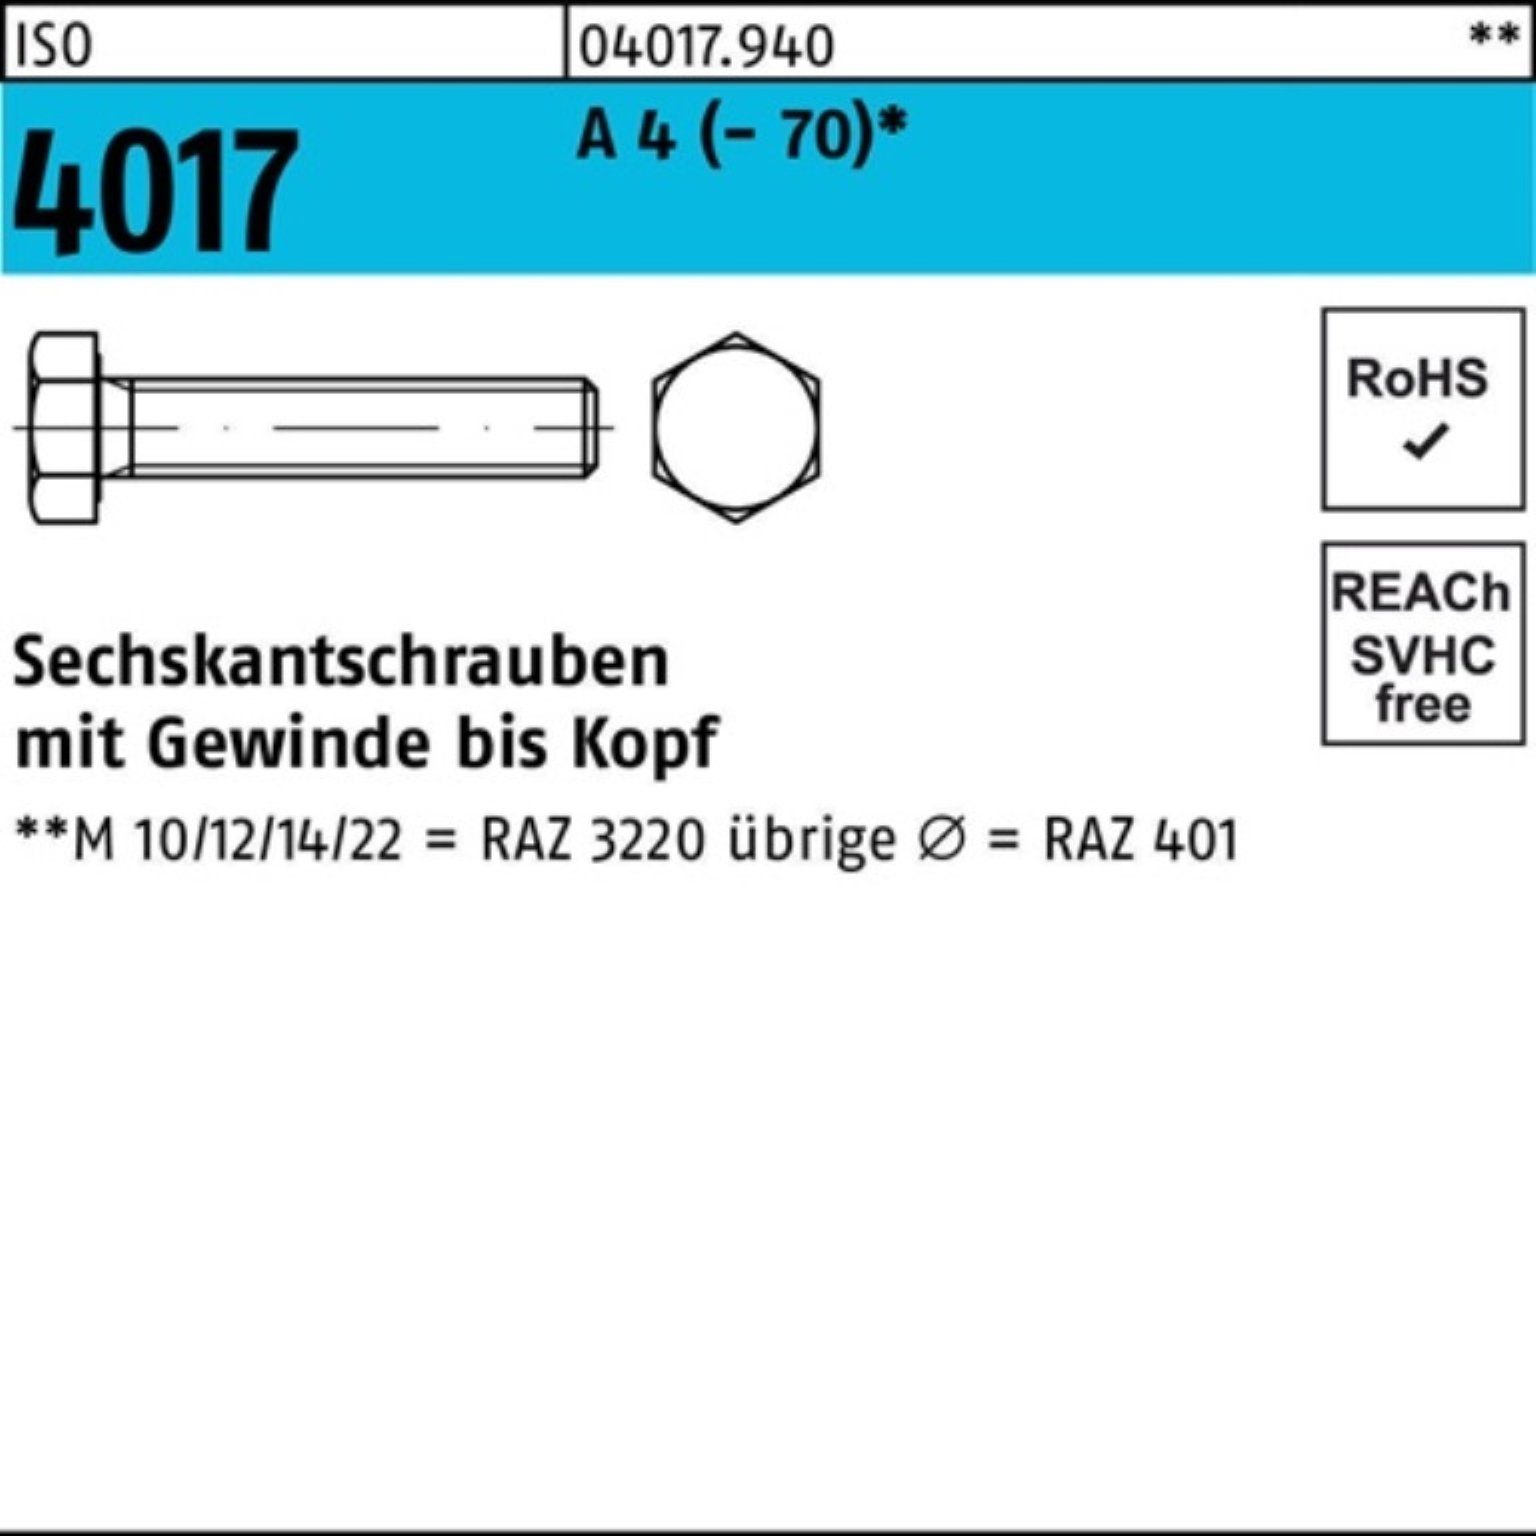 Bufab Sechskantschraube 100er Pack Sechskantschraube ISO 4017 VG M16x 75 A 4 (70) 25 Stück